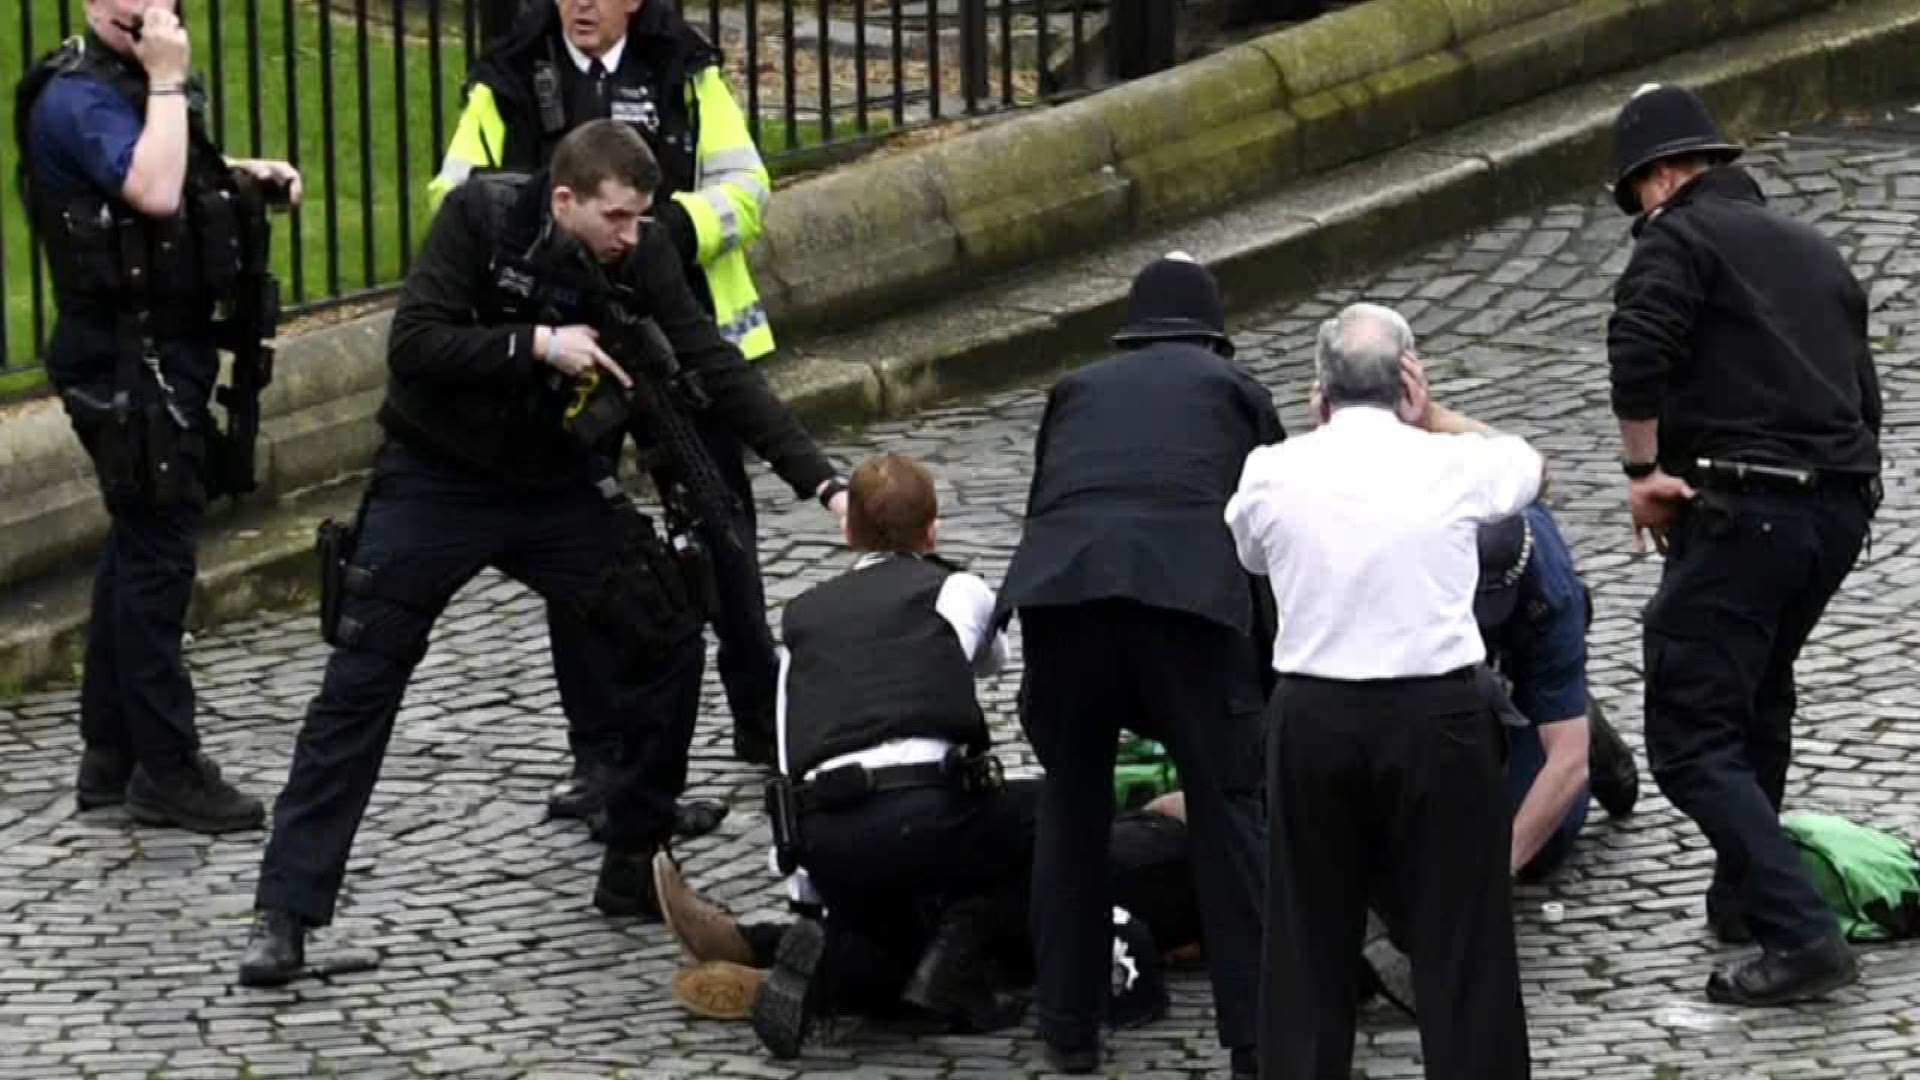 4 dead, including suspect, in London attack